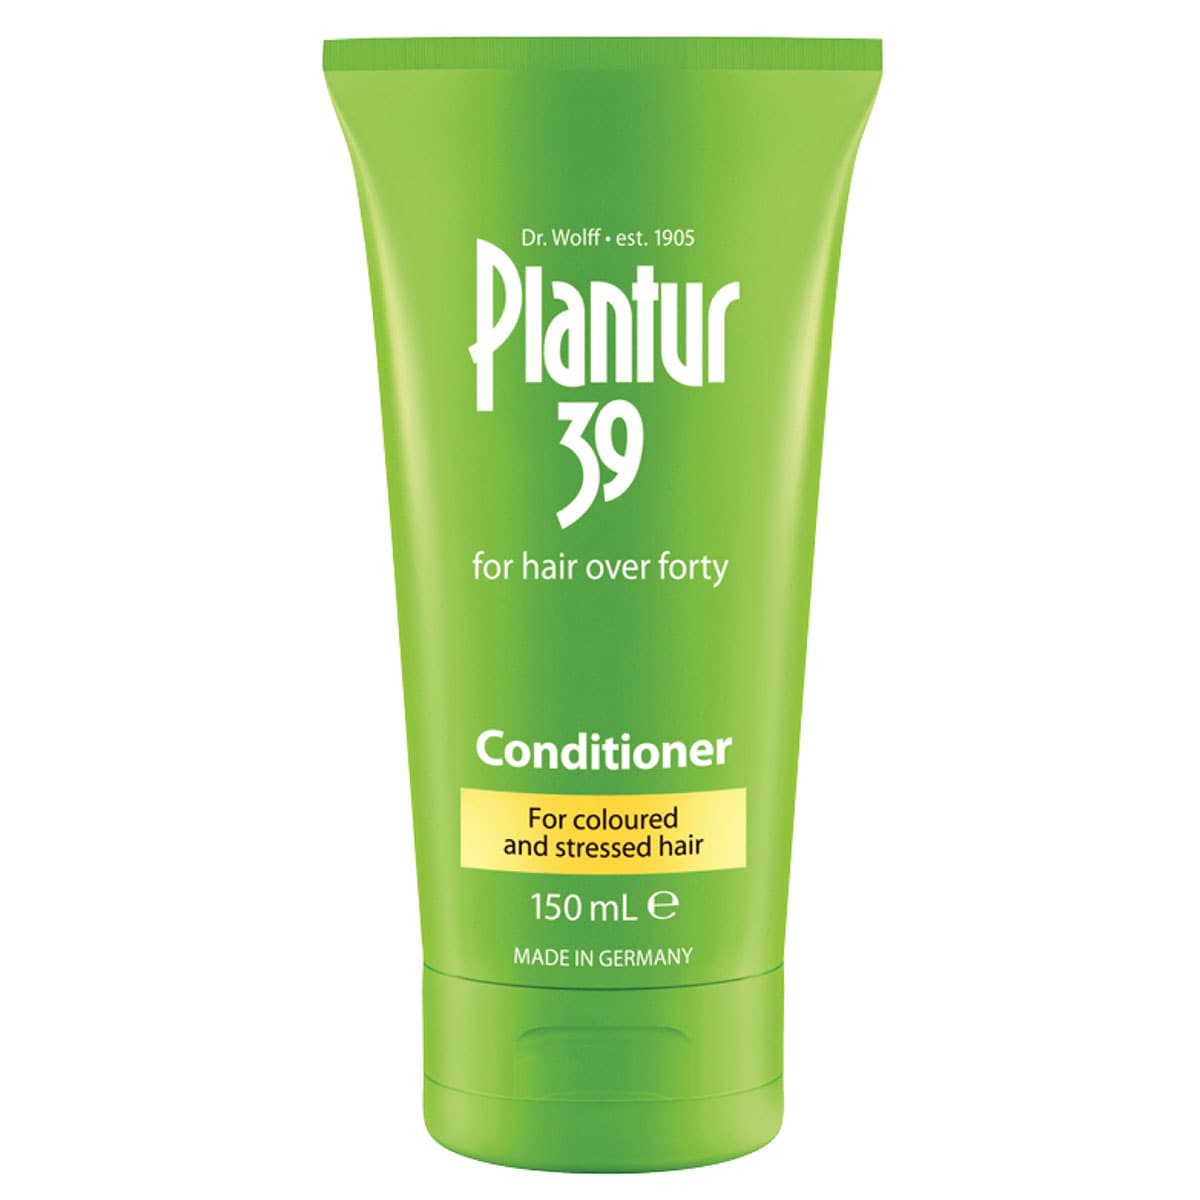 Plantur39 Conditioner Coloured & Stressed Hair 150ml